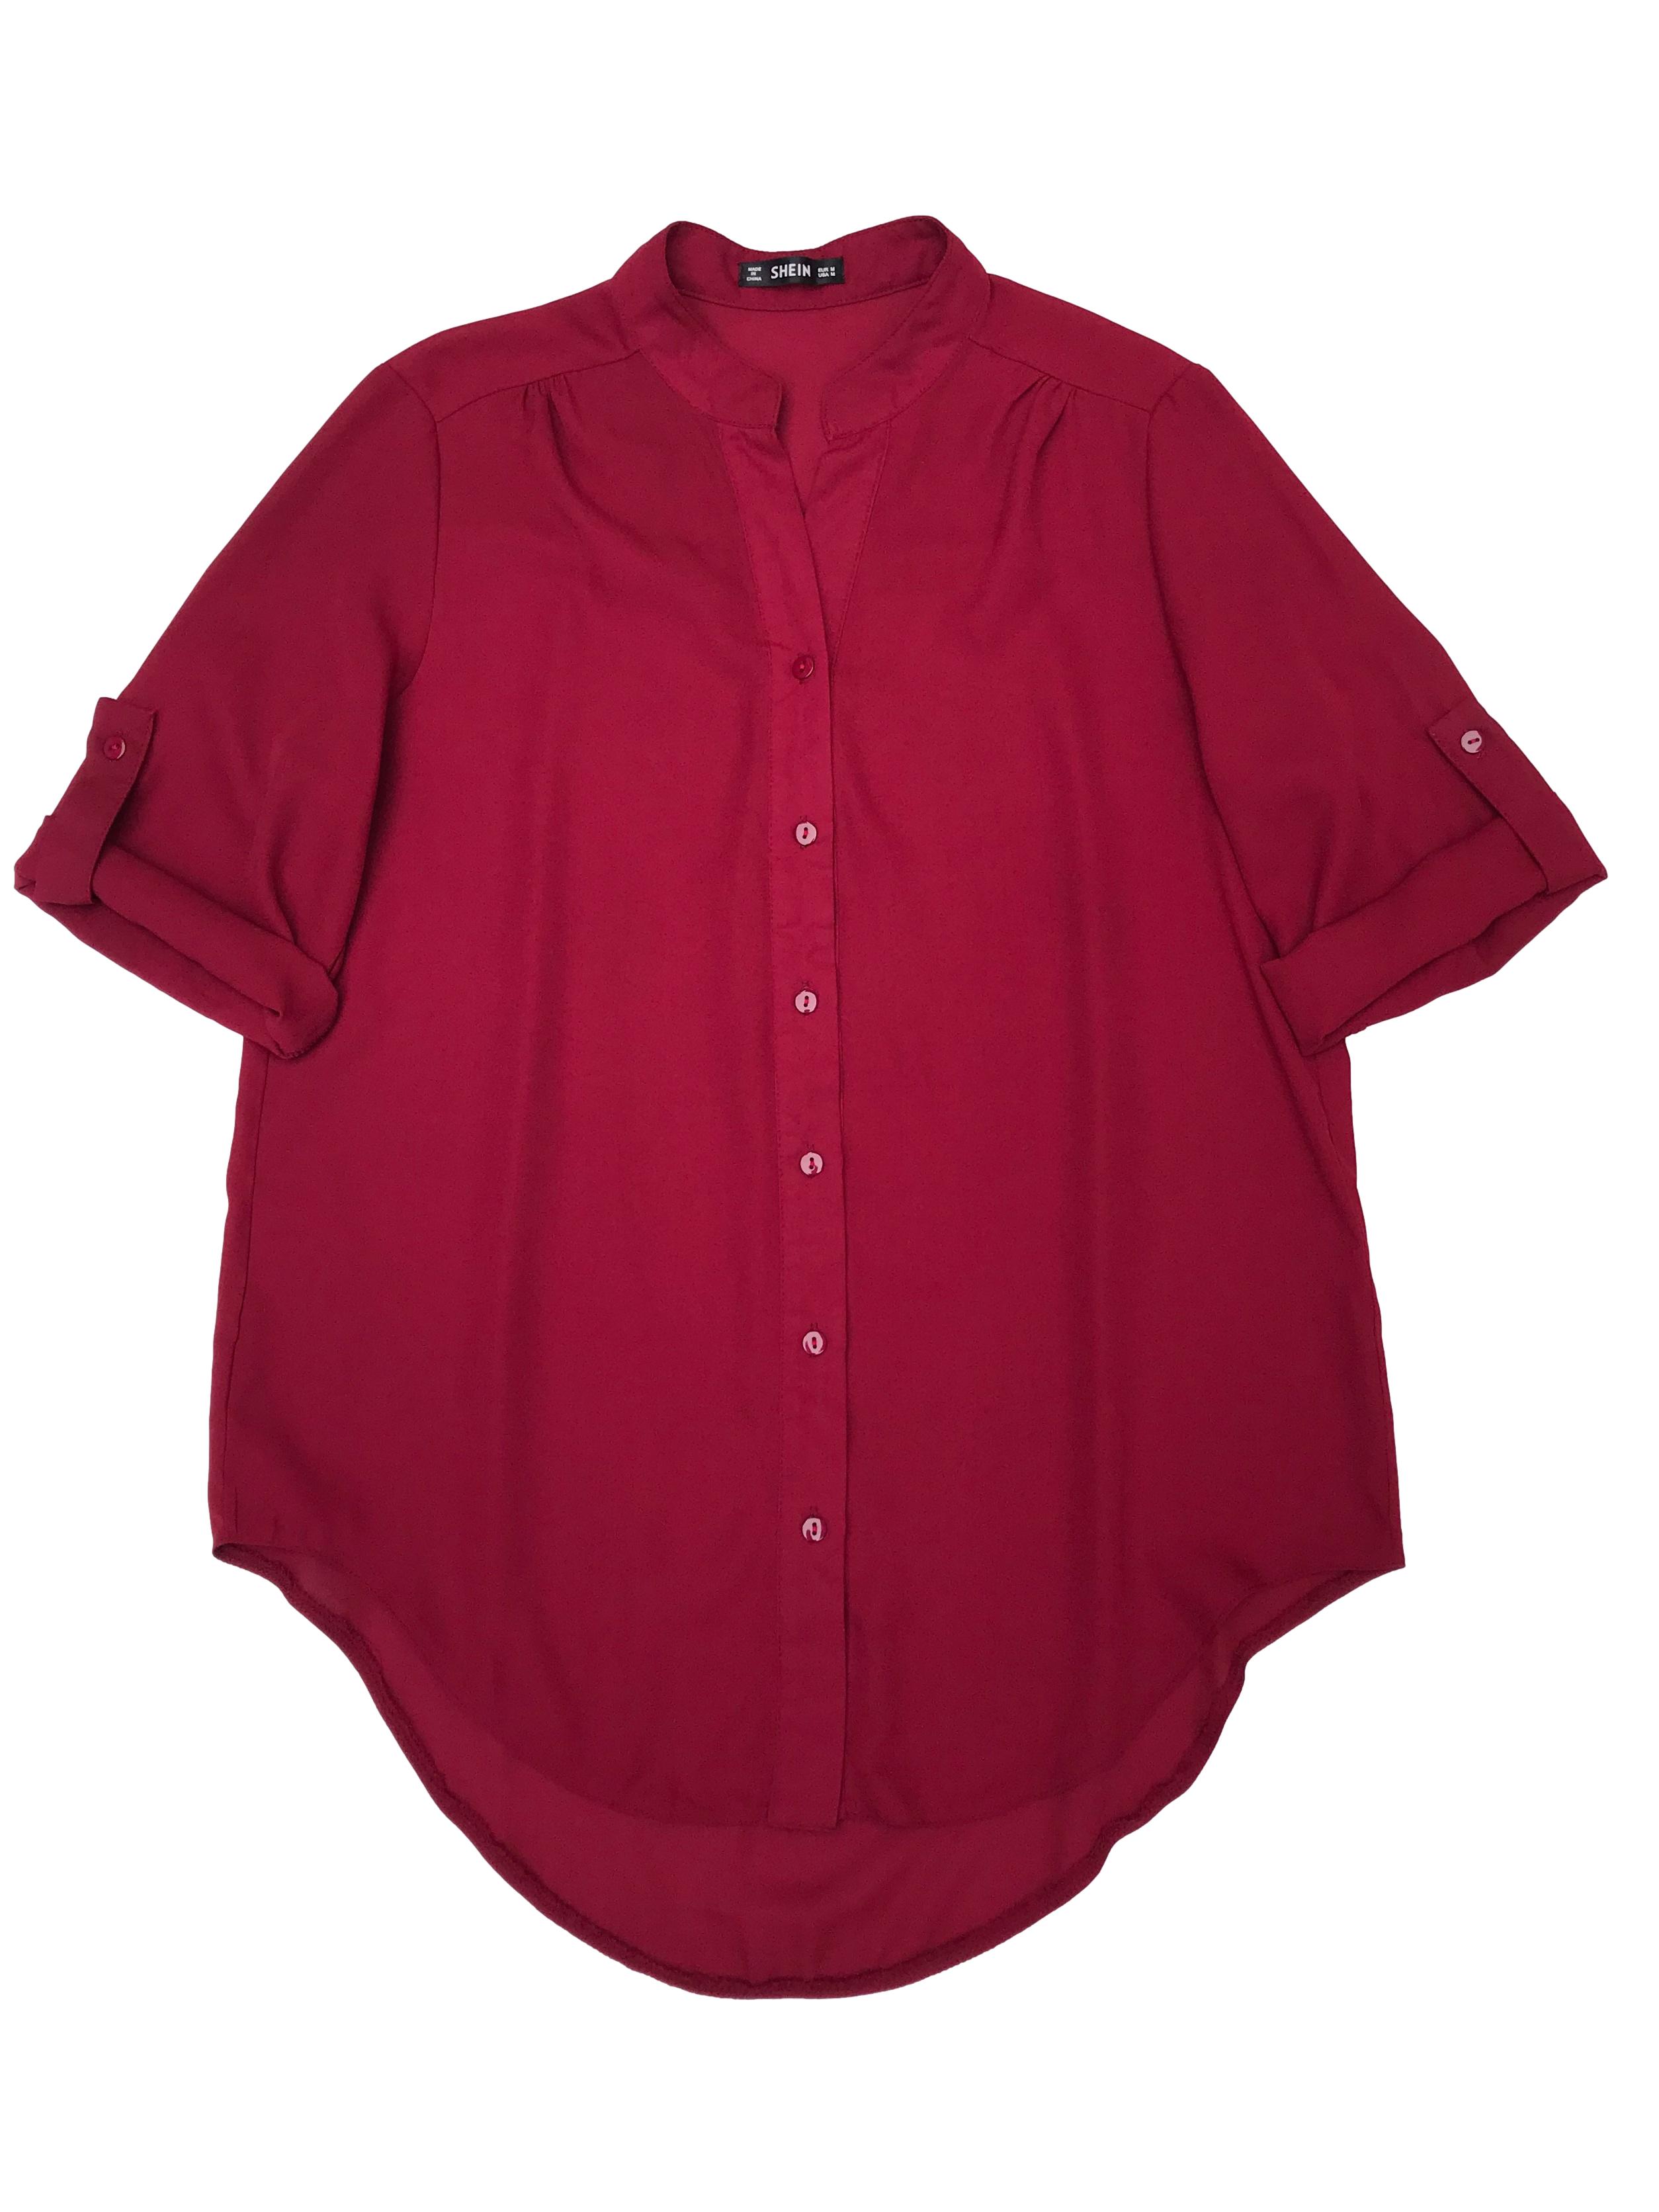 Blusa Shein de gasa guinda, cuello nerú con fila de botones delanteros, manga 3/4 regulable con botón, canesú en la espalda y basta asimétrica. Busto 102cm Largo 70cm